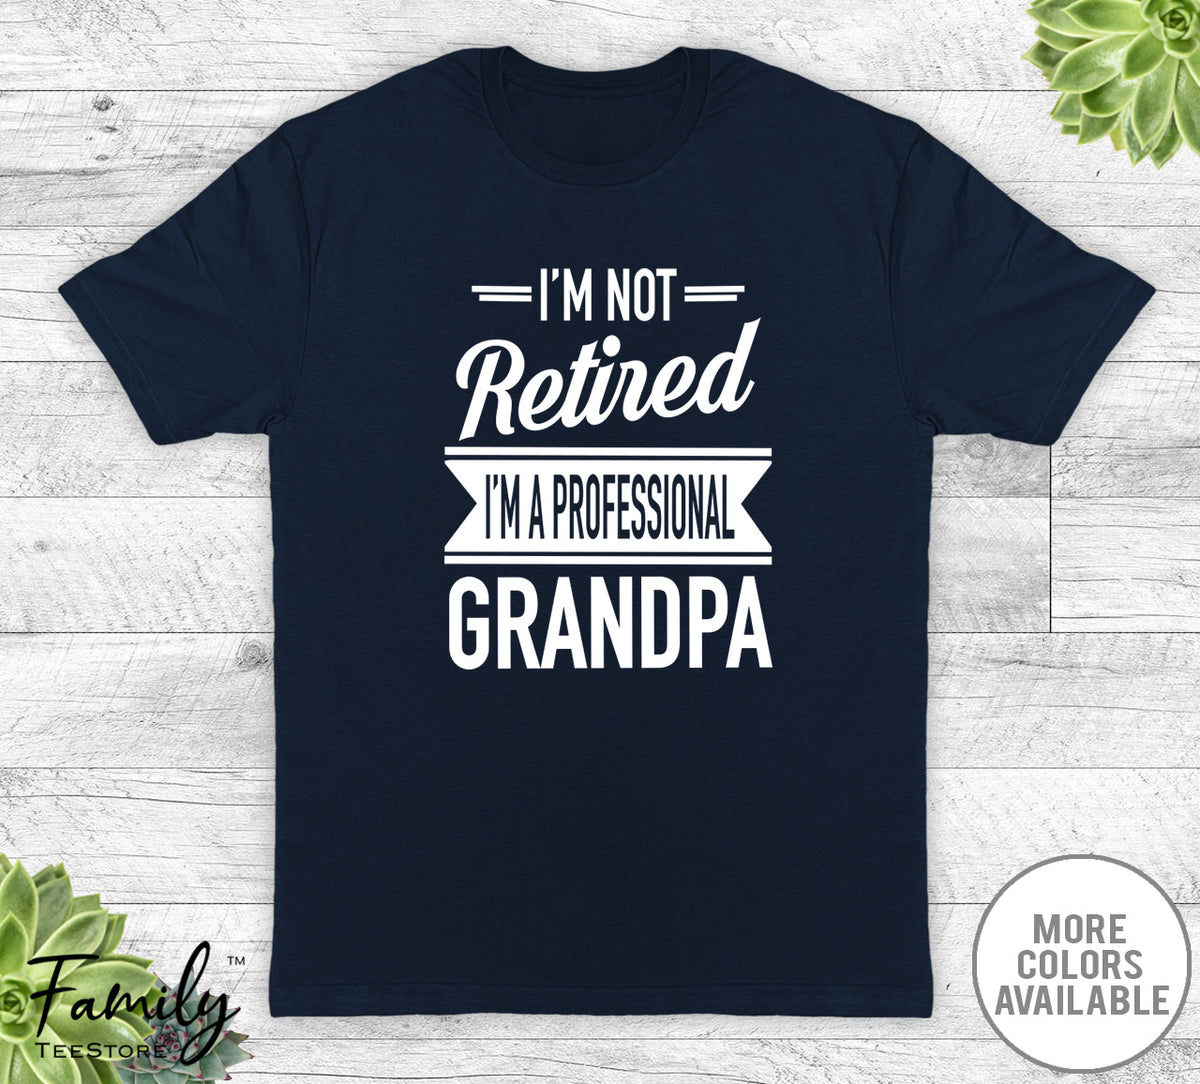 I'm Not Retired I'm A Professional Grandpa - Unisex T-shirt - Grandpa Shirt - Grandpa Gift - familyteeprints